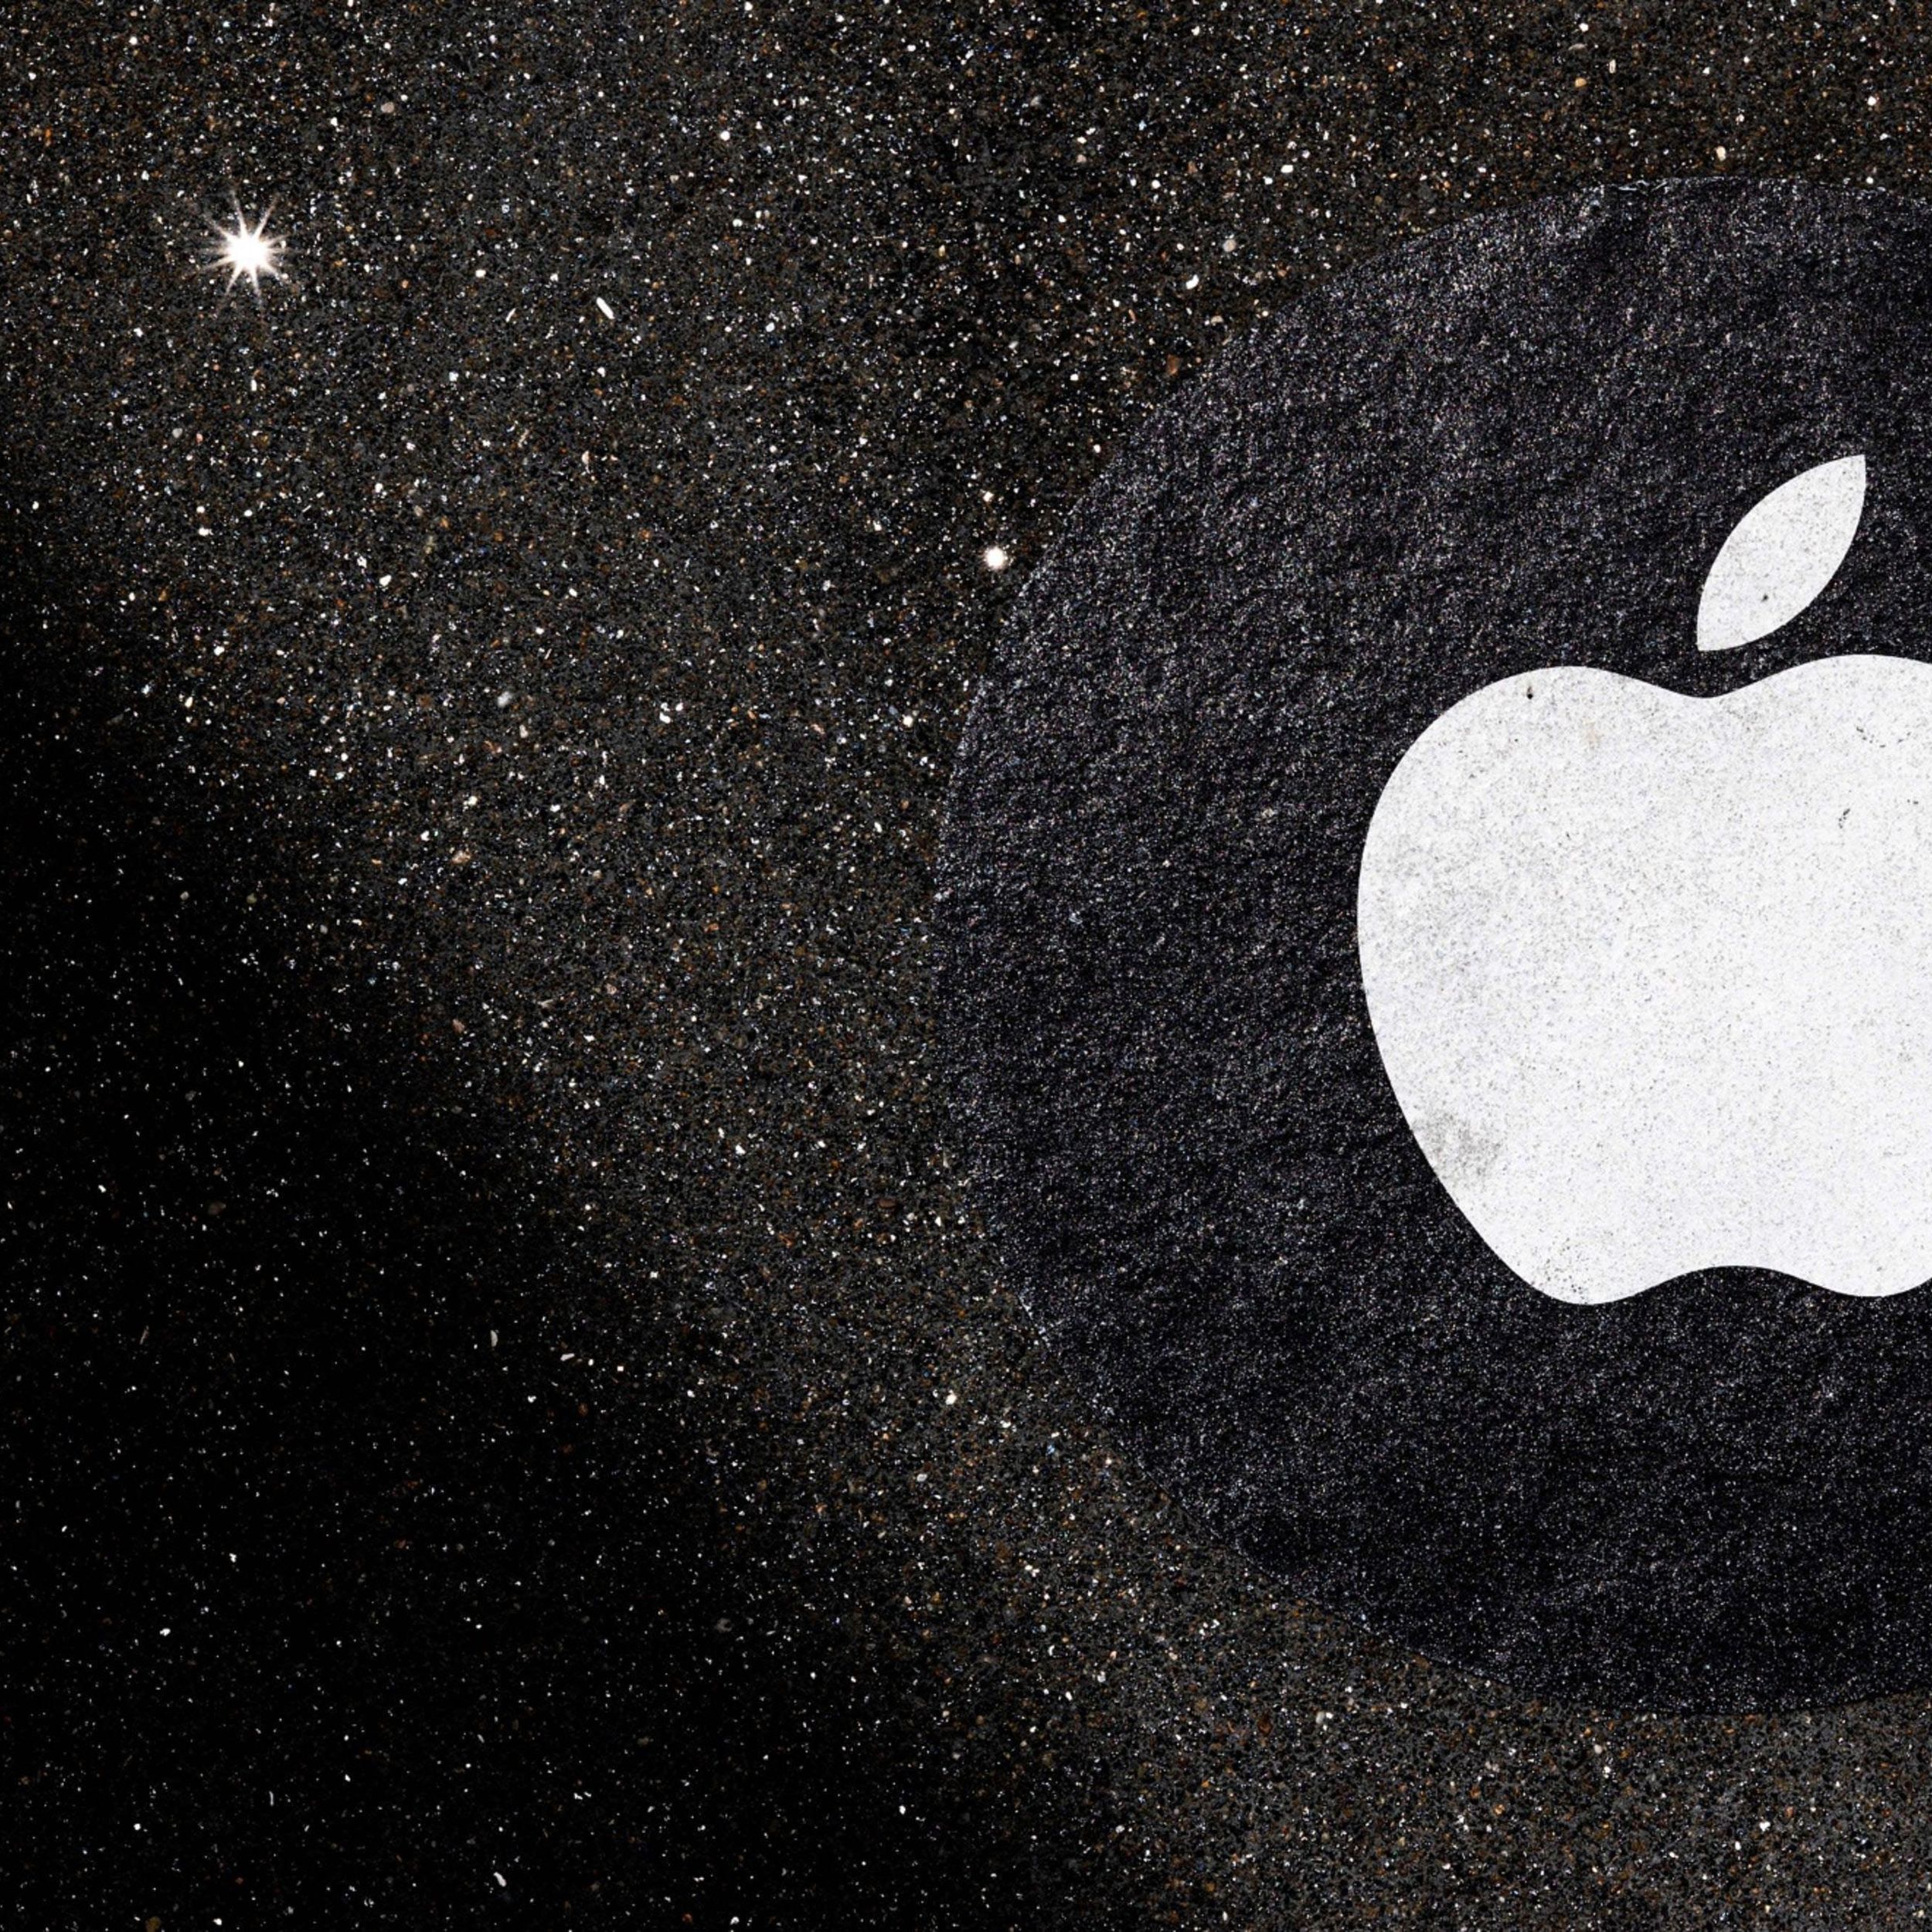 Apple app store policies upheld by court in antitrust challenge